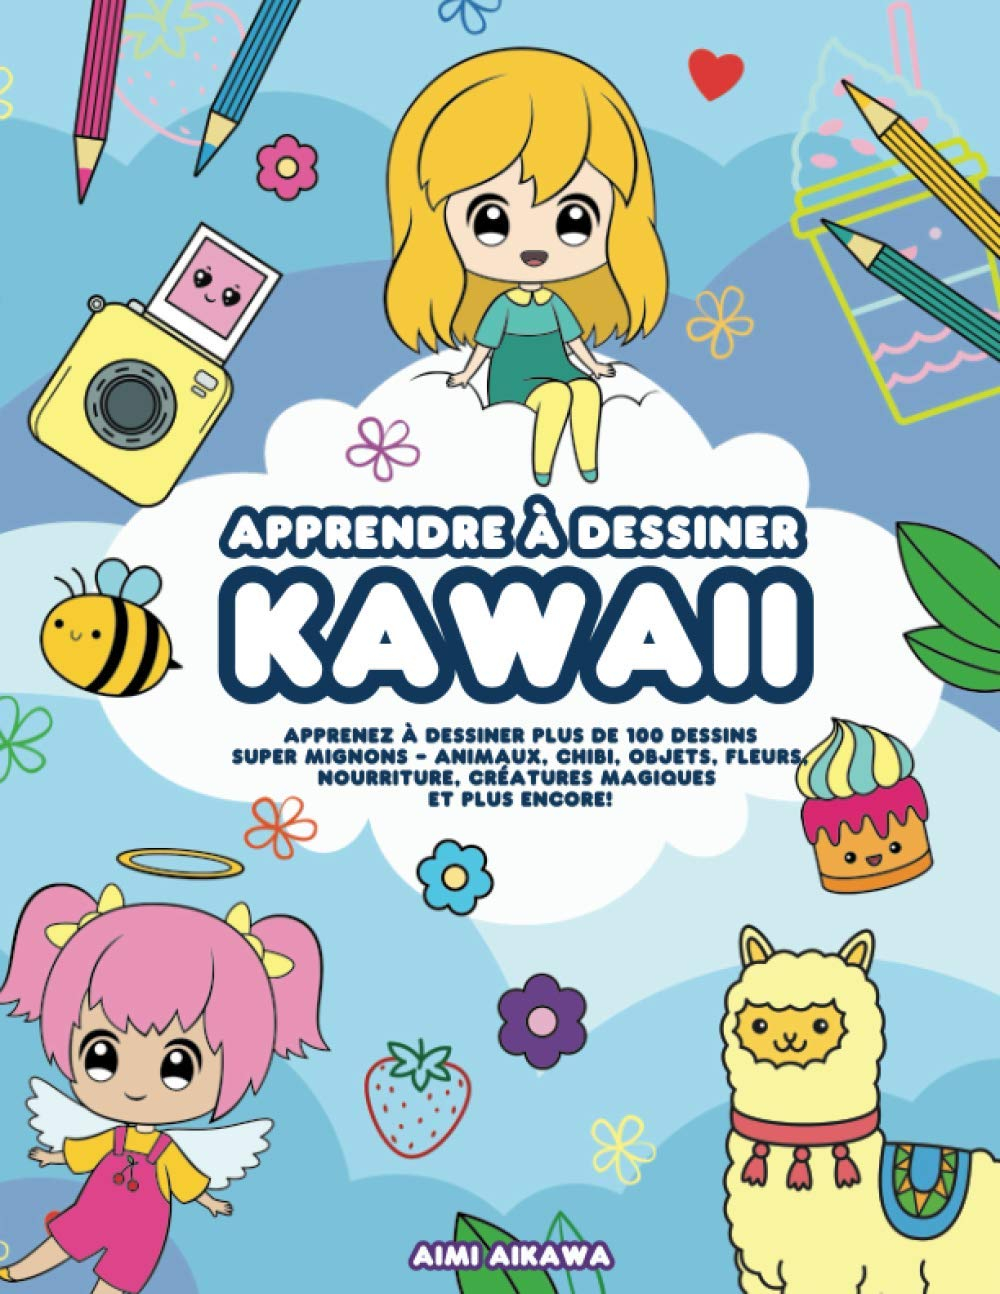 Apprendre à dessiner Kawaii: Apprenez à dessiner plus de 100 dessins super mignons - animaux, chibi,